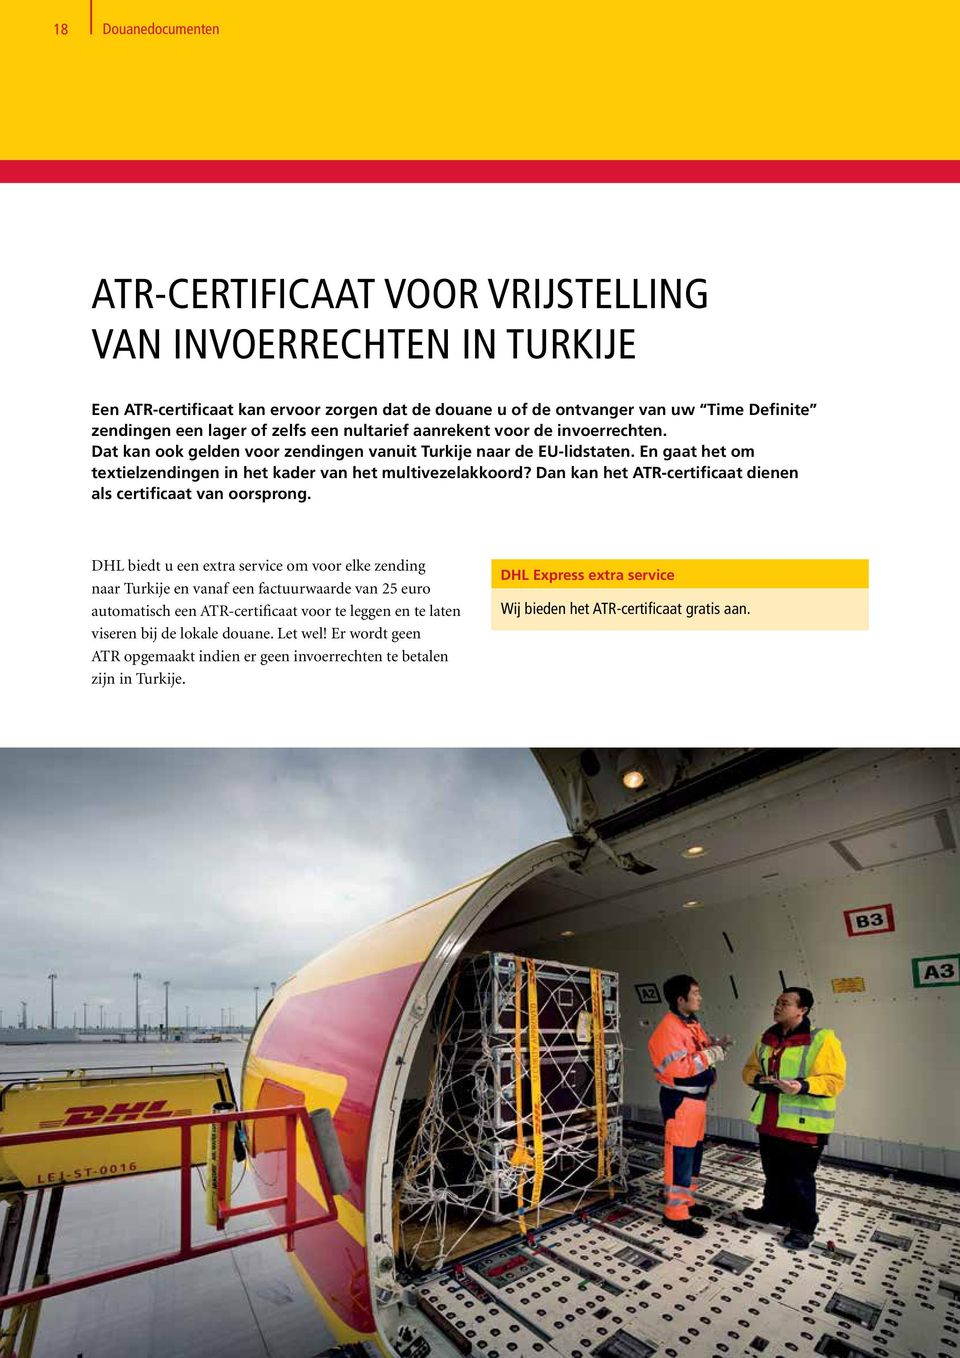 Dan kan het ATR-certificaat dienen als certificaat van oorsprong.